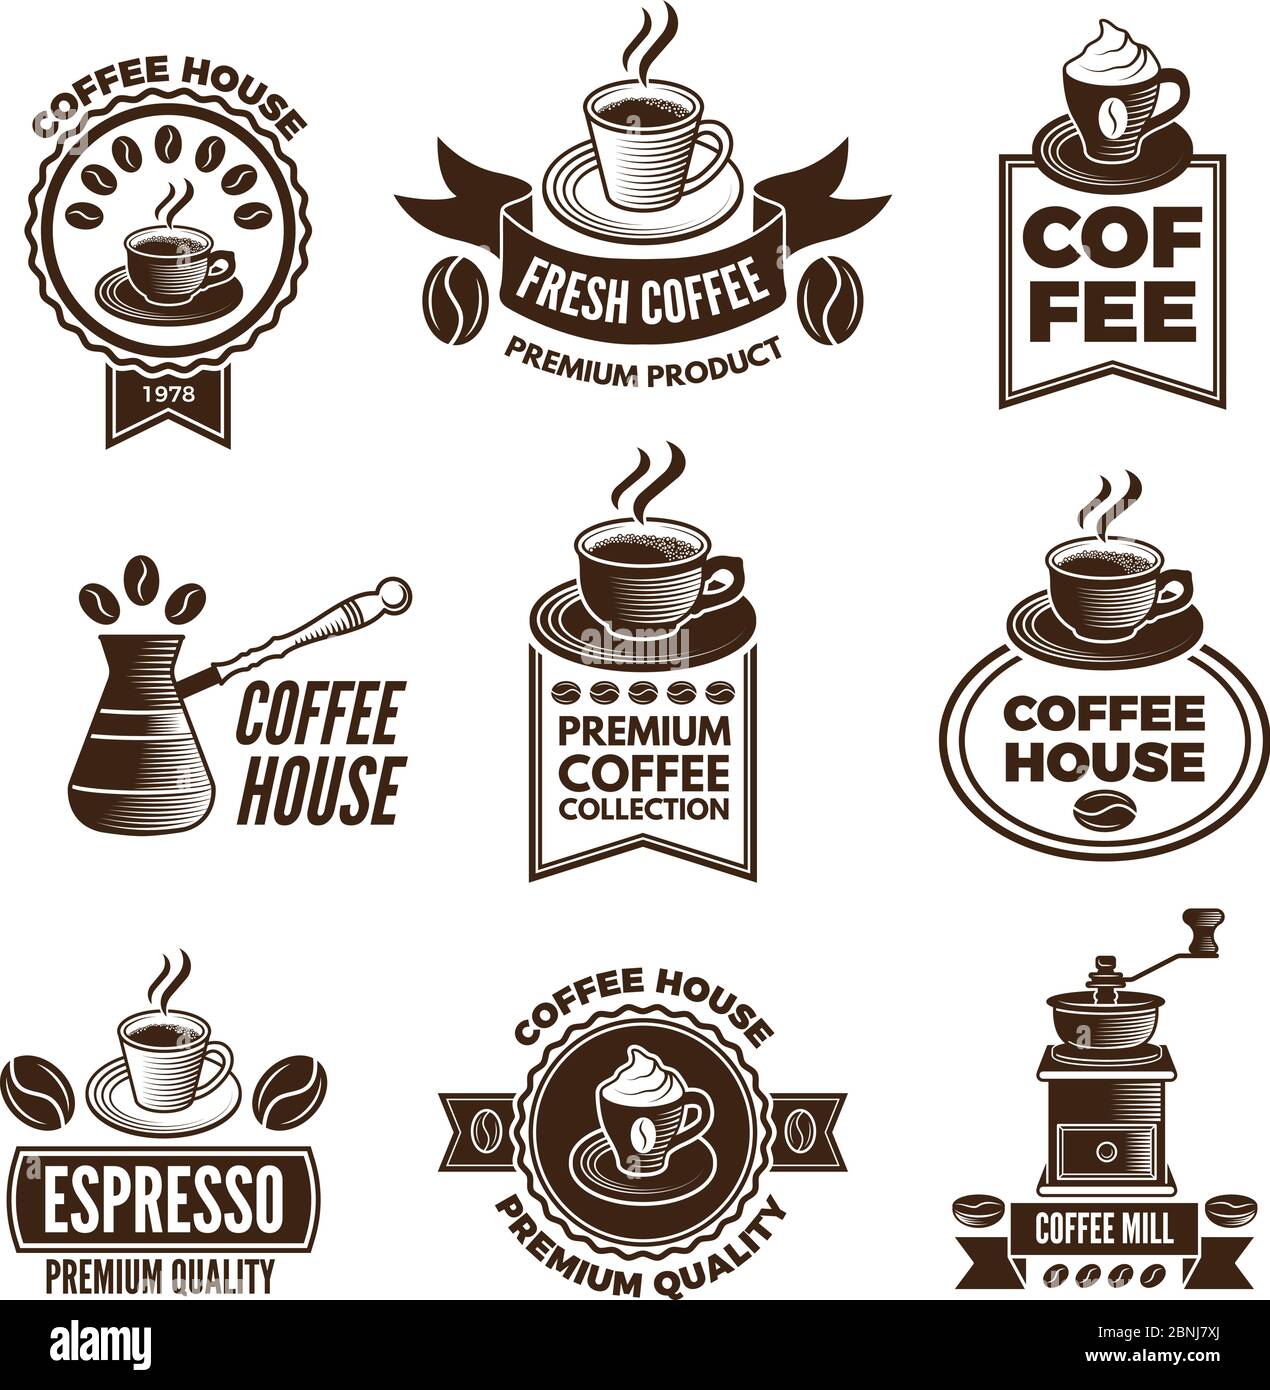 Différentes étiquettes sont définies pour le café. Photos de tasses de café et de grains de caféine Illustration de Vecteur